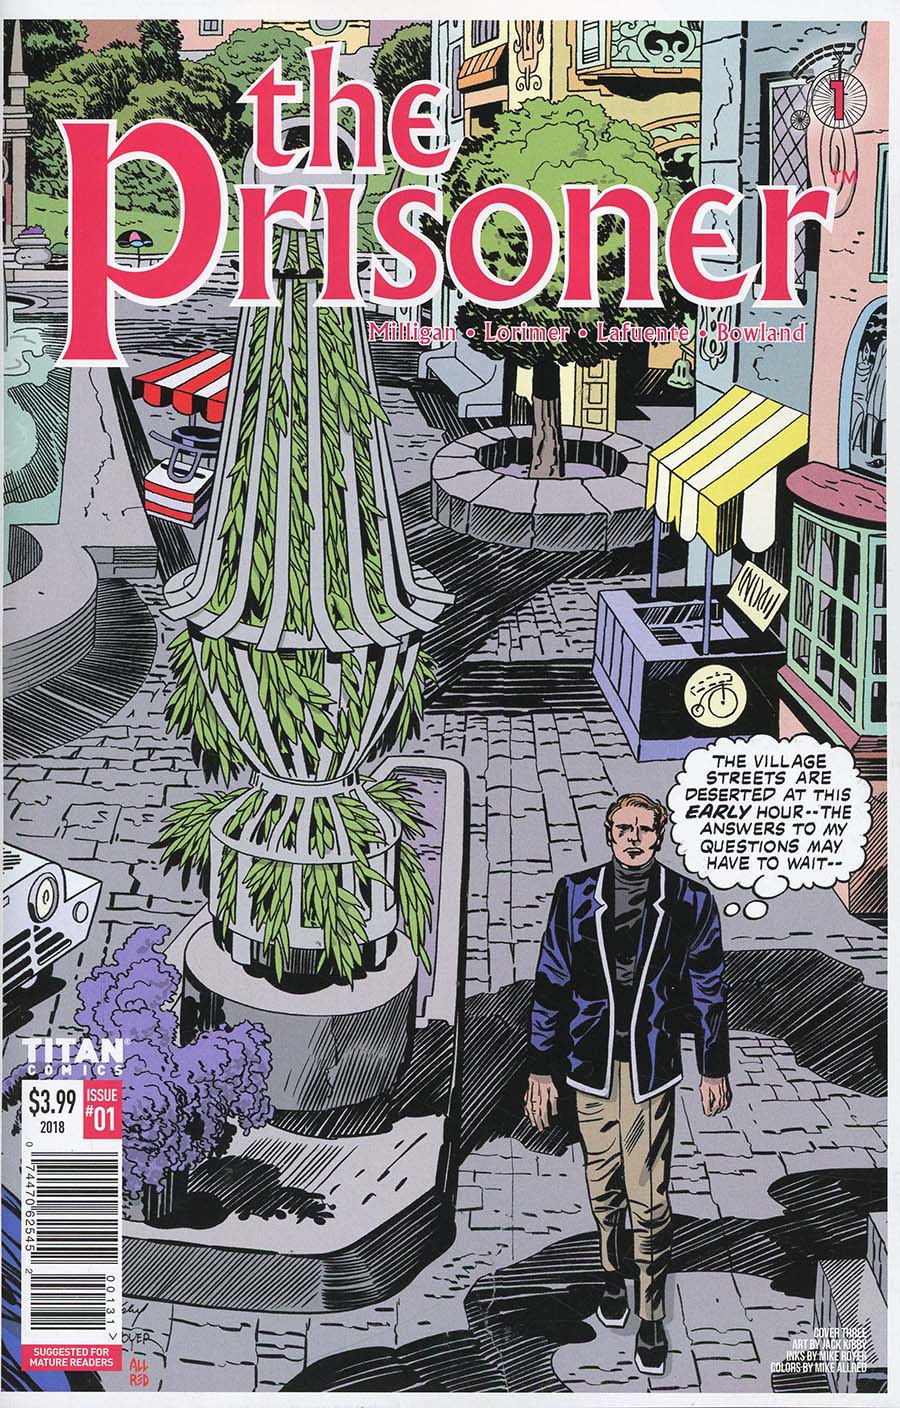 Prisoner Vol 2 #1 Cover C Variant Jack Kirby & Mike Allred Cover